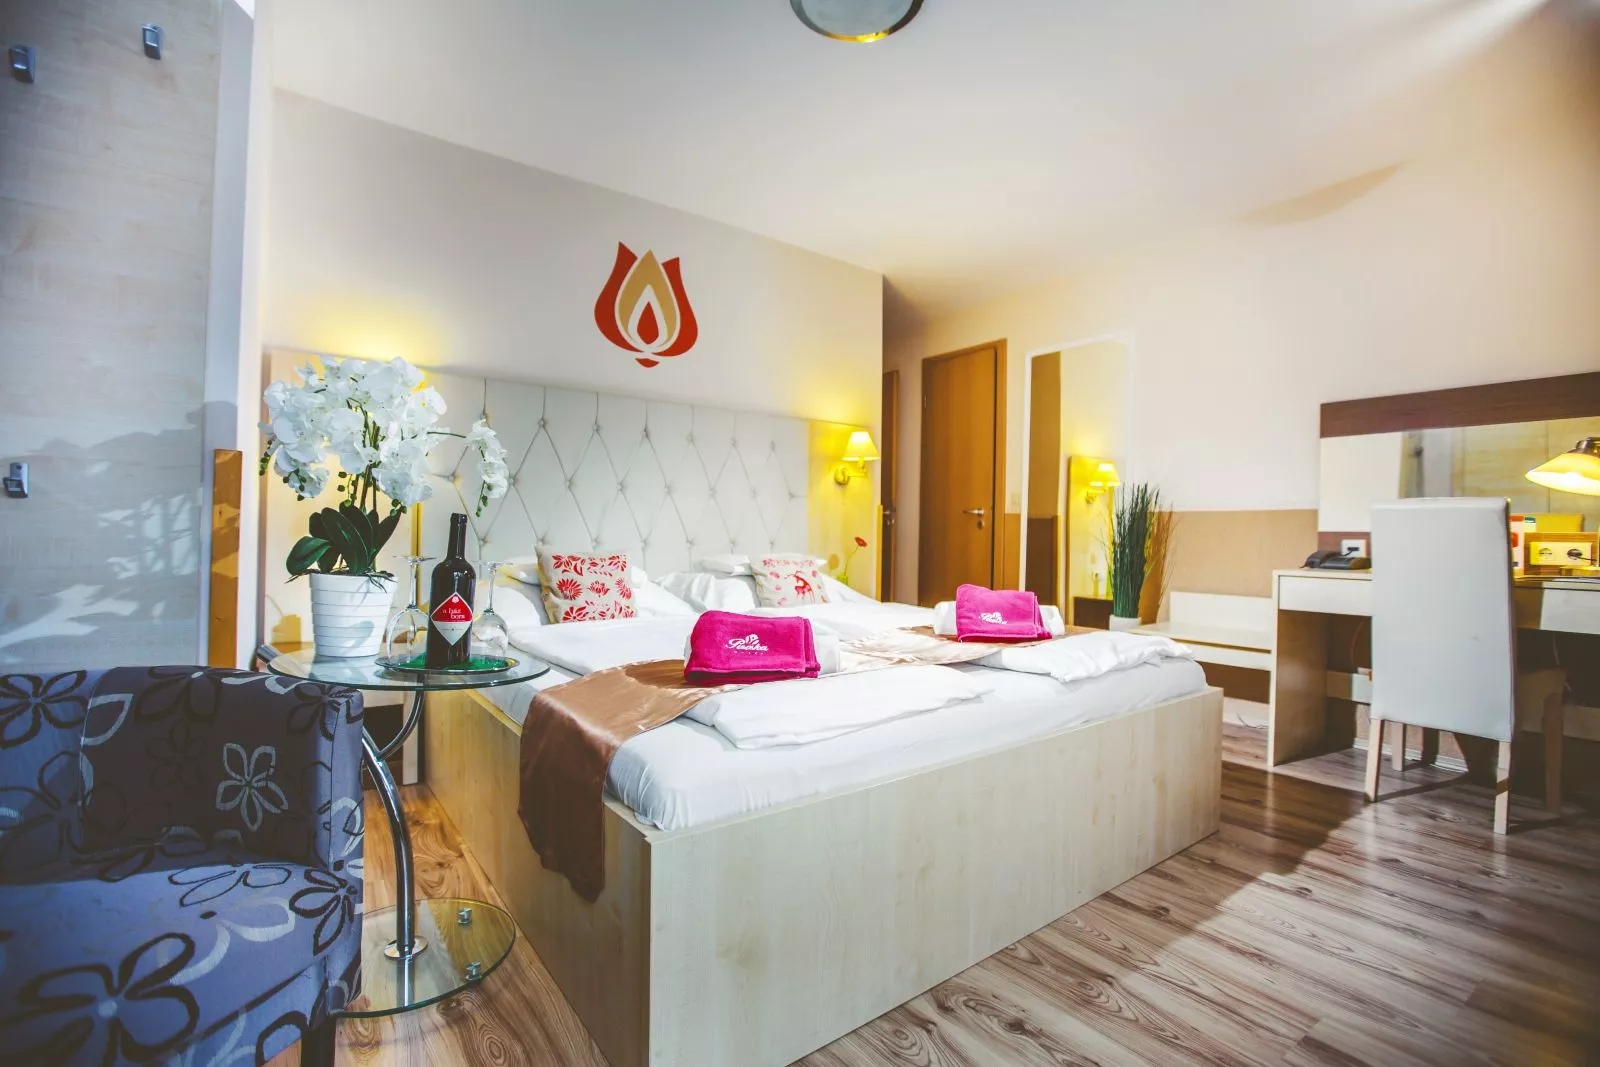 A Hotel Piroska sokszínű wellness- és programkínálat is garantálja az idelátogatók felhőtlen pihenését és szórakozását.